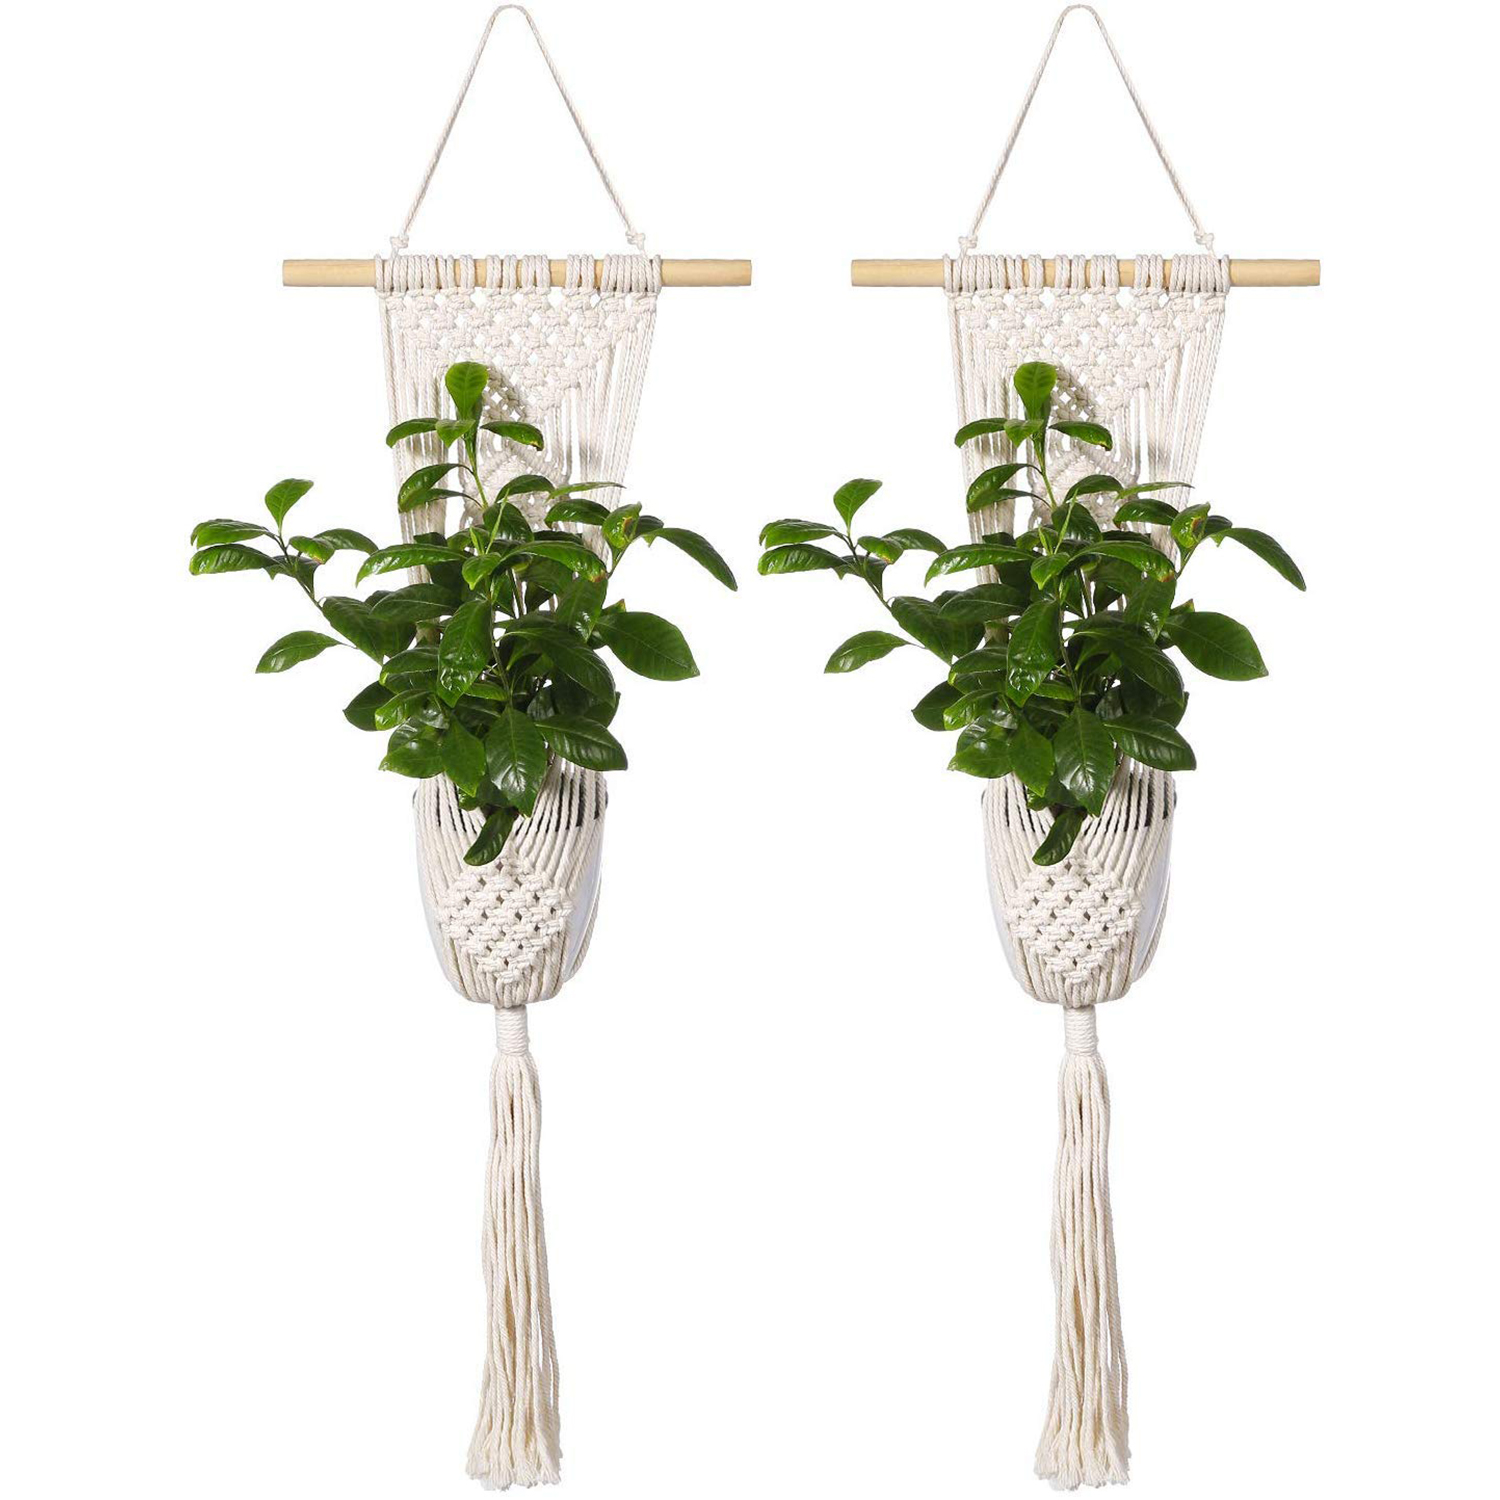 handmade macrame bohemian hanging indoor outdoor planters manufacturer, Supplier and exporter